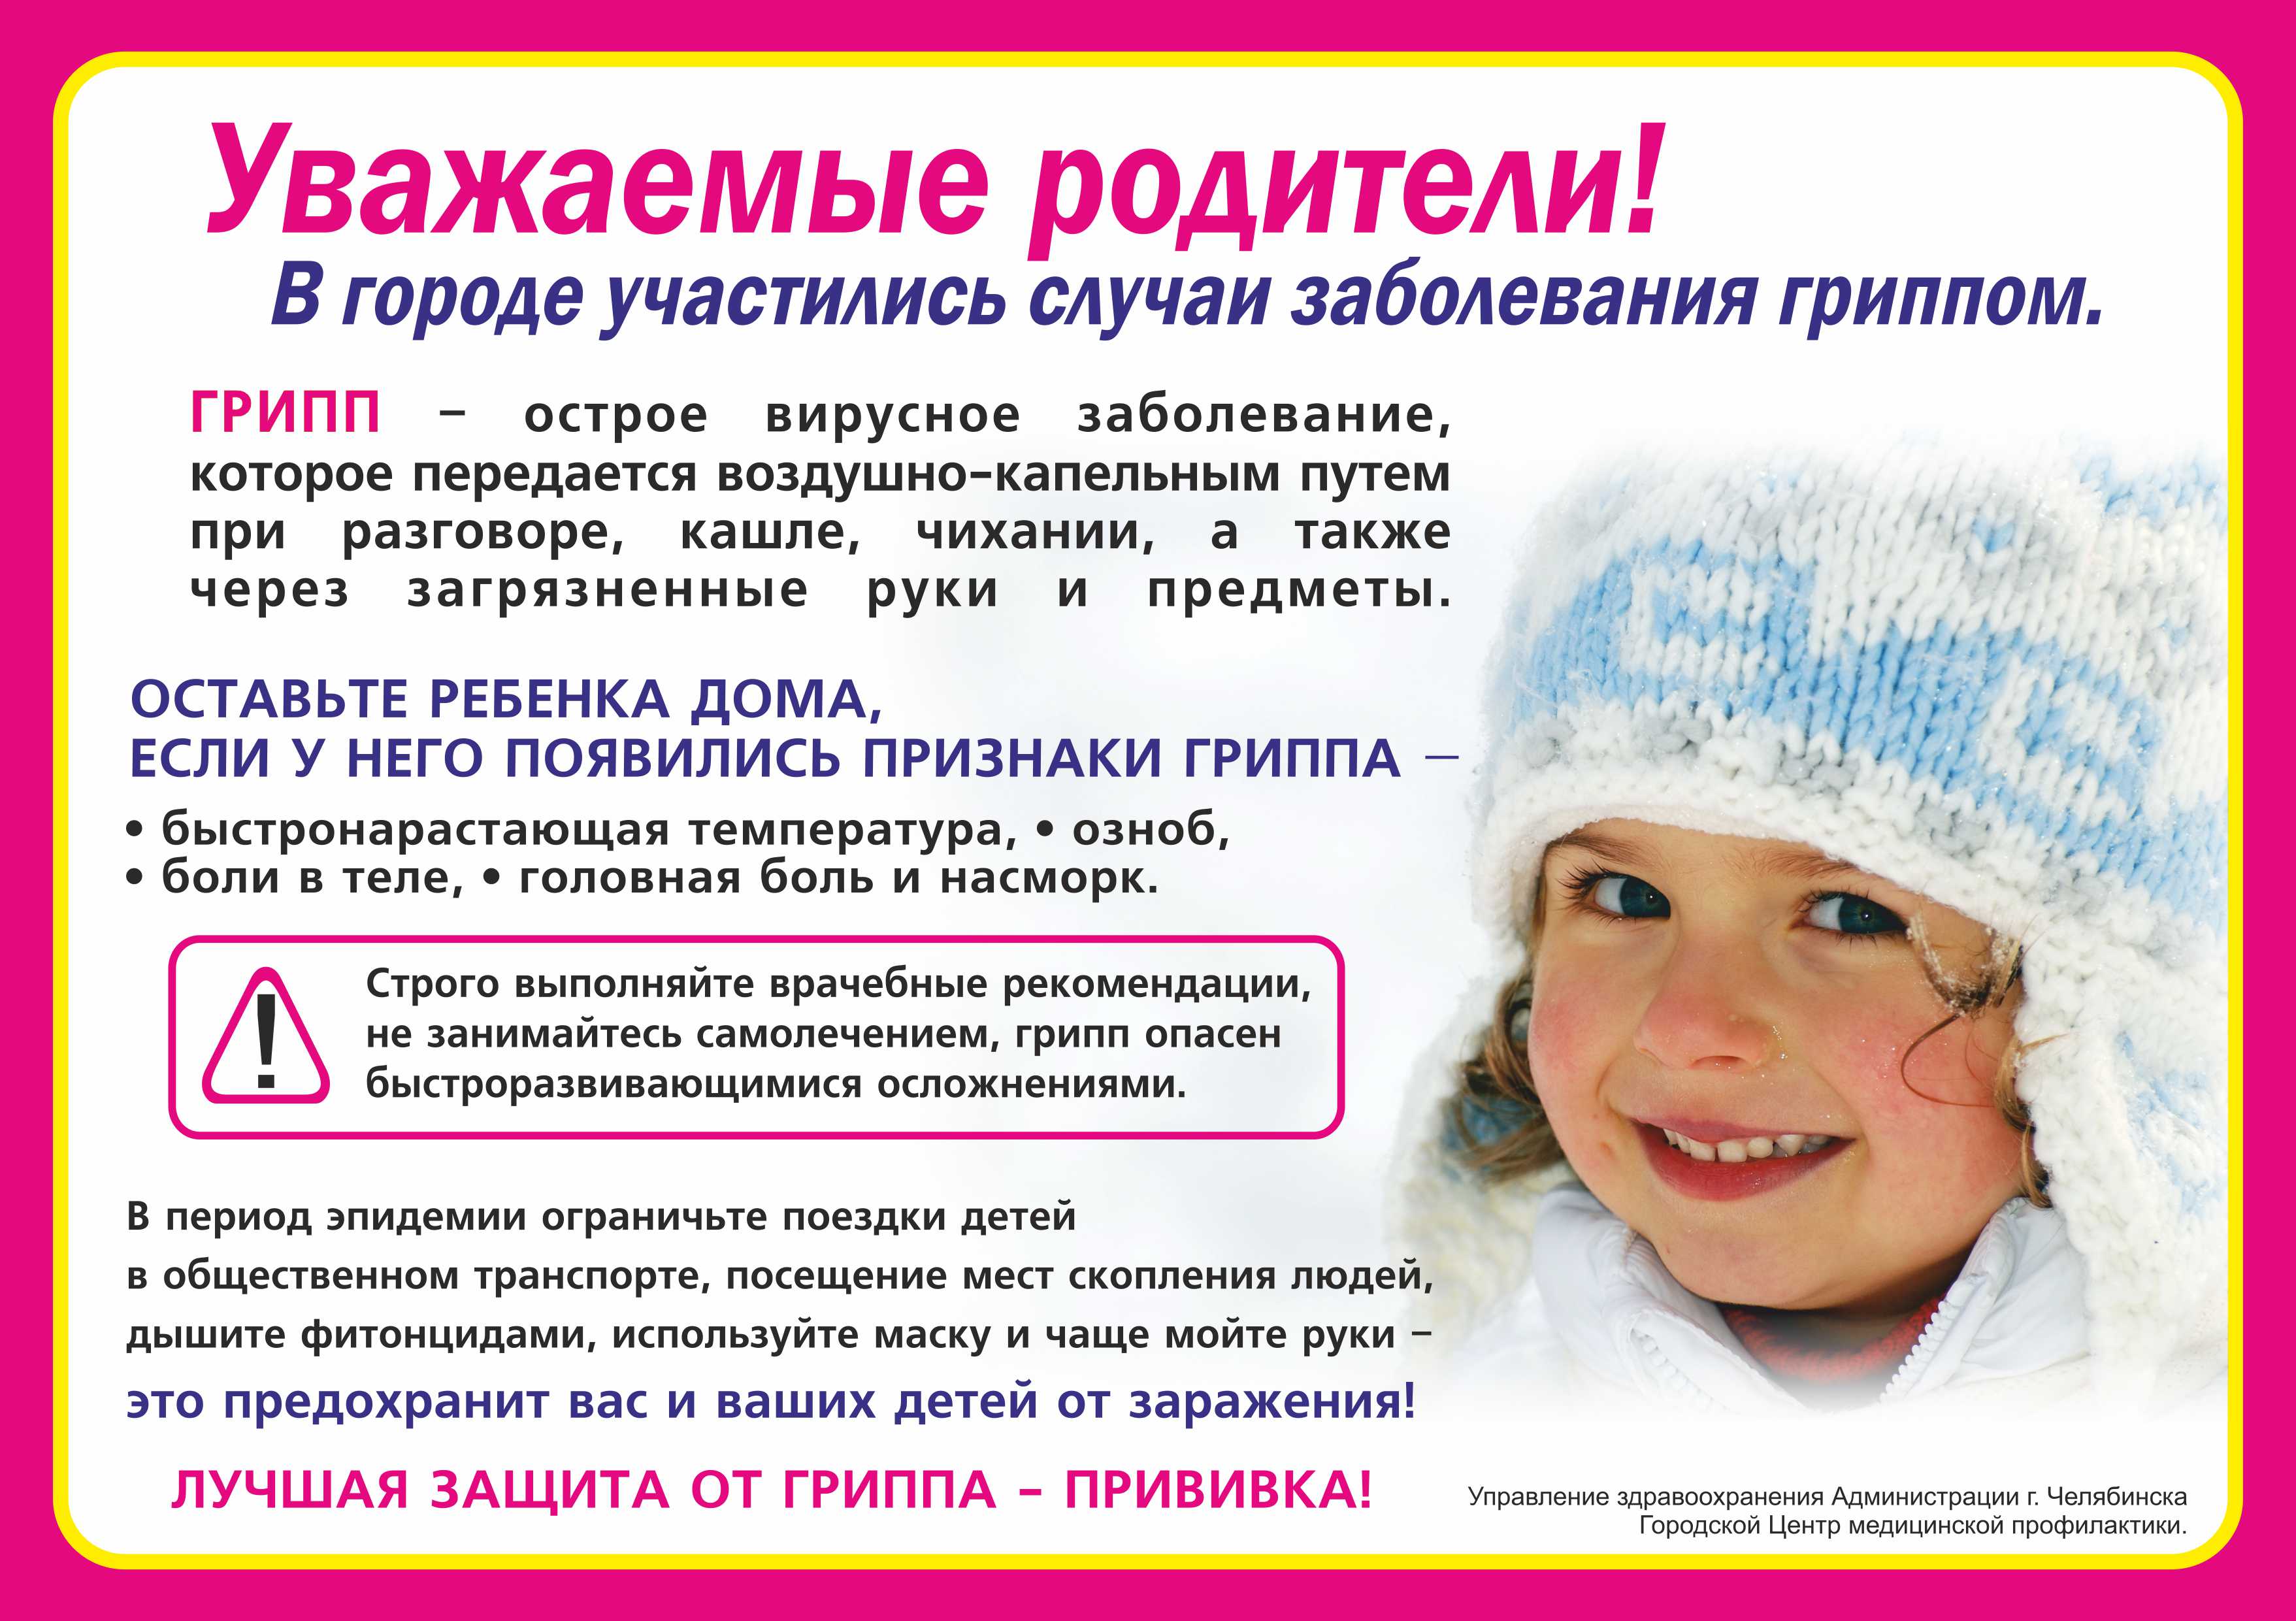 Прививки с соплями можно. Профилактика простудных заболеваний зимой. Уважаемые родители дети с признаками ОРВИ. Профилактика при гриппе. Профилактика ОРВИ памятка.